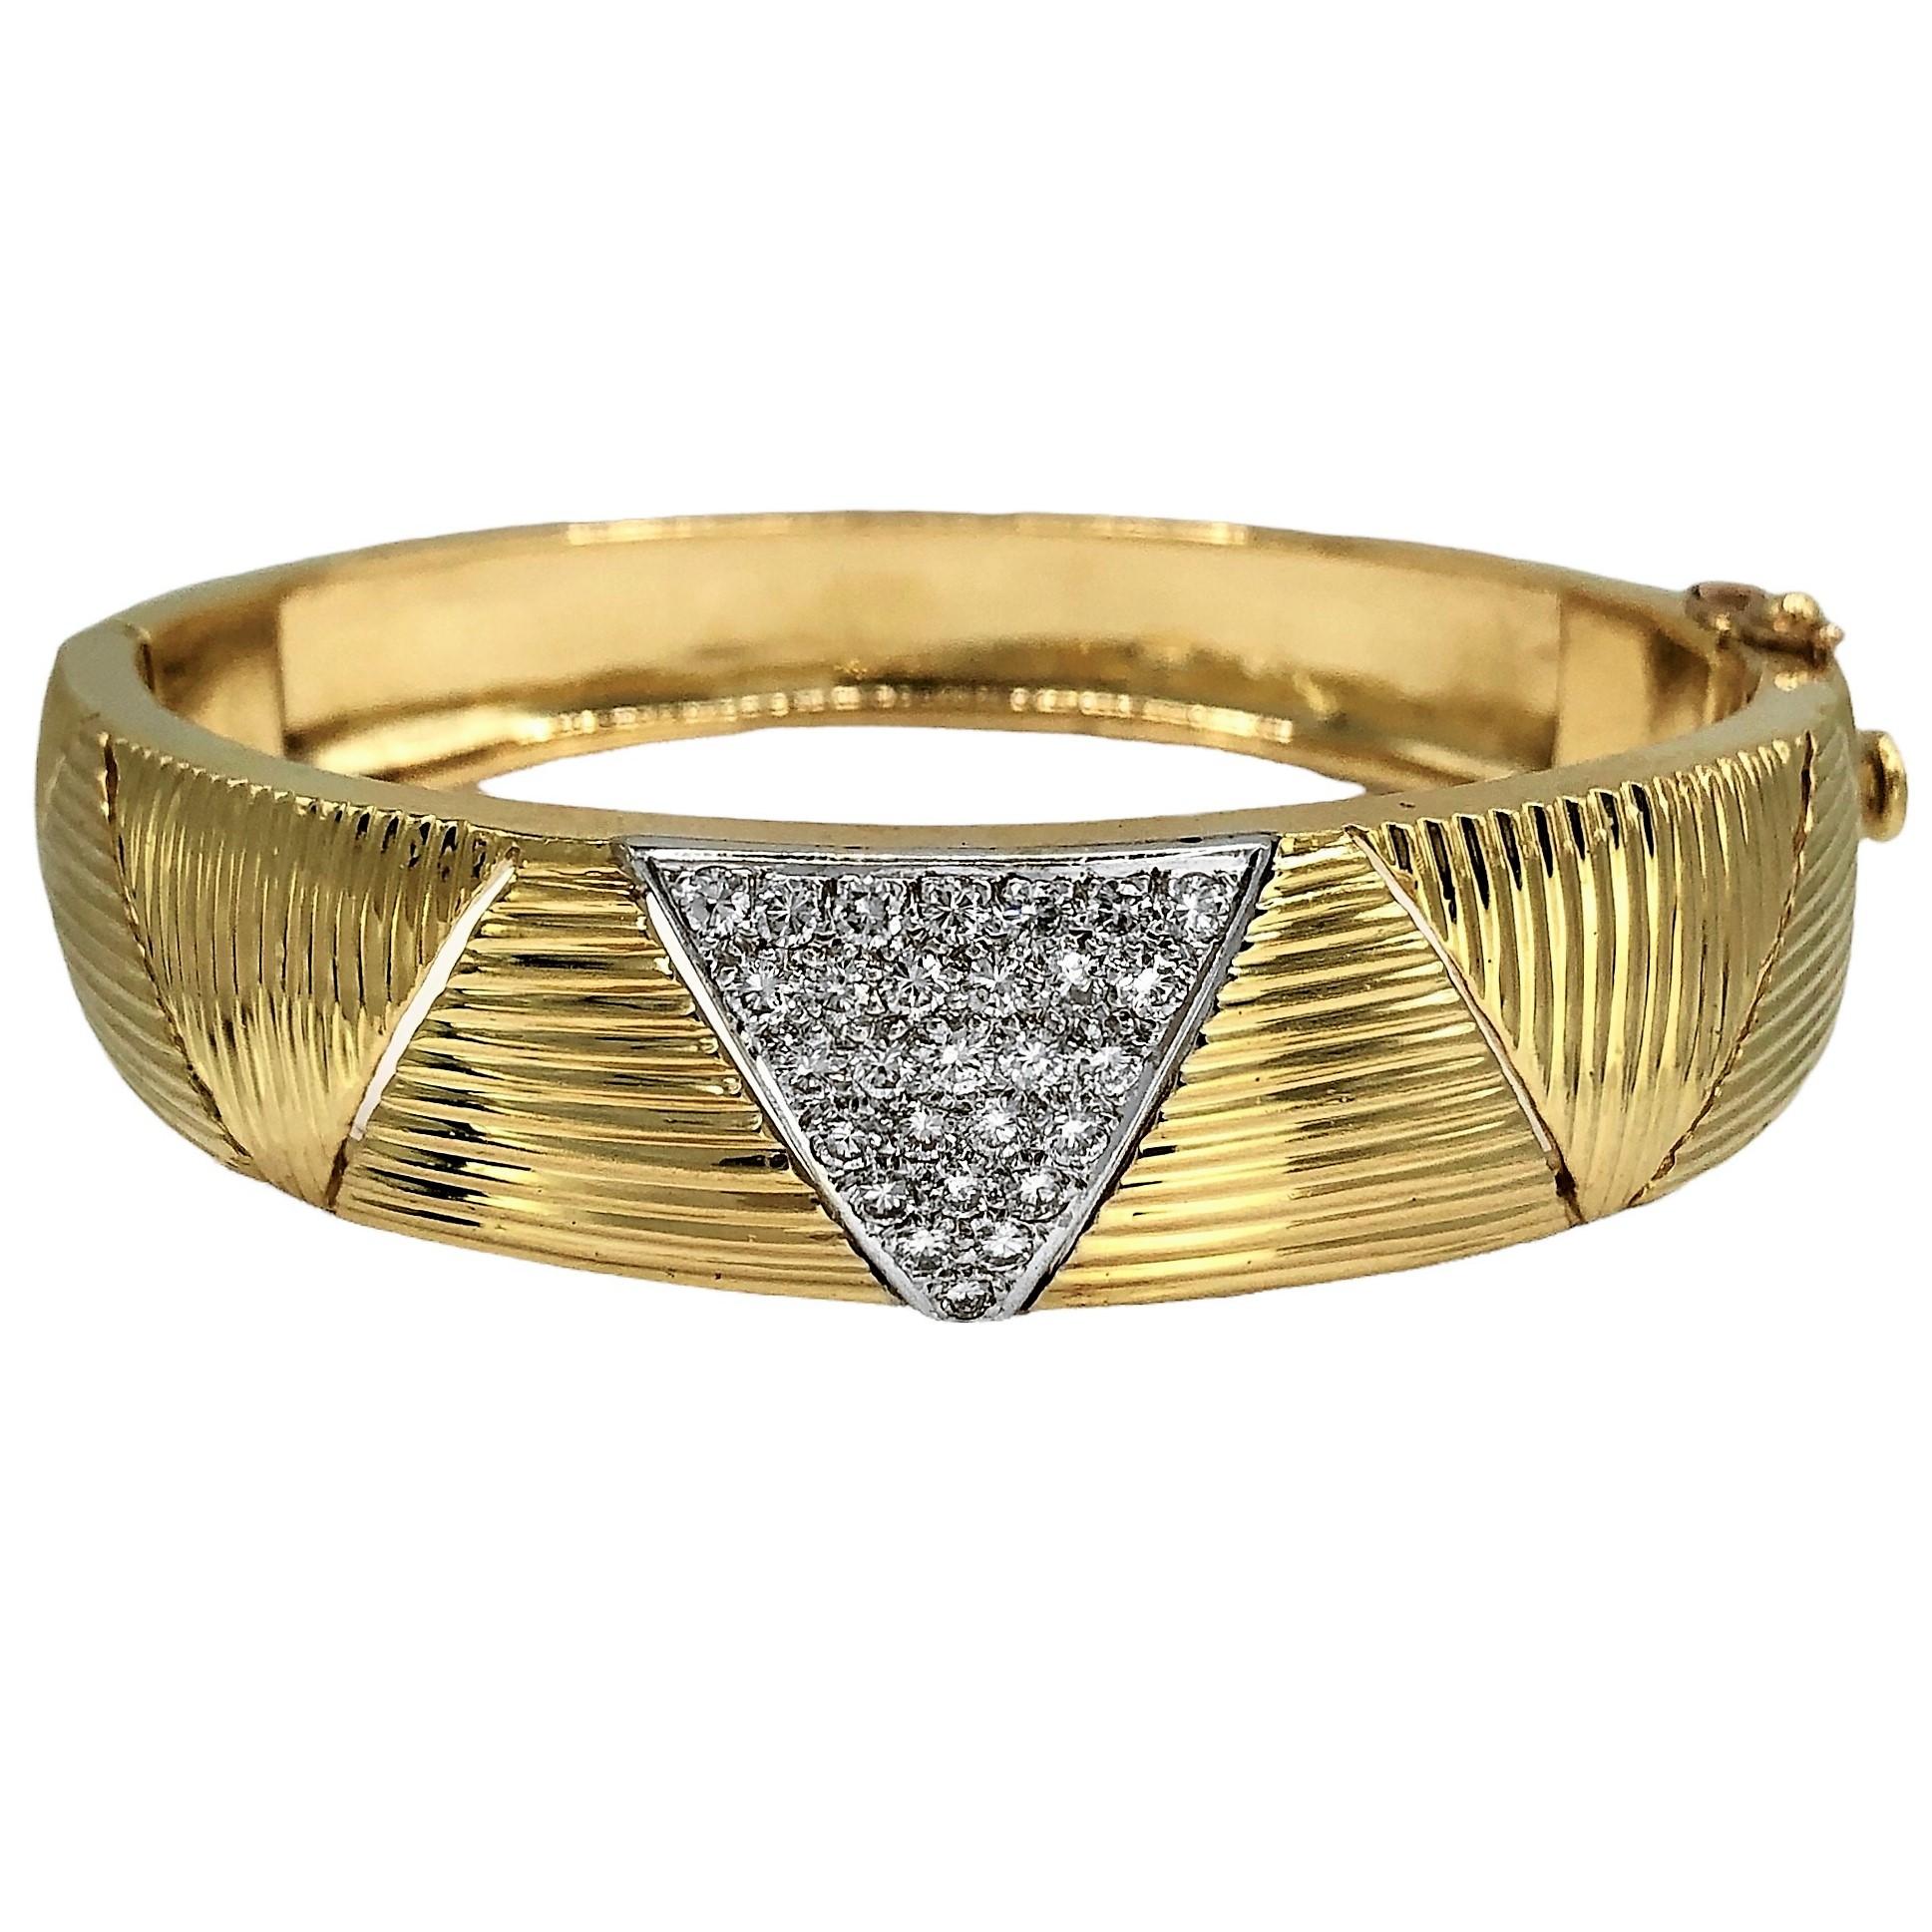 Ce bracelet en or 18 carats magnifiquement exécuté se gradue au centre d'une largeur de presque 5/8 pouces à 3/8 pouces à l'arrière. Un motif triangulaire pavé proéminent à l'avant est serti de vingt-huit diamants taille brillant d'un poids total